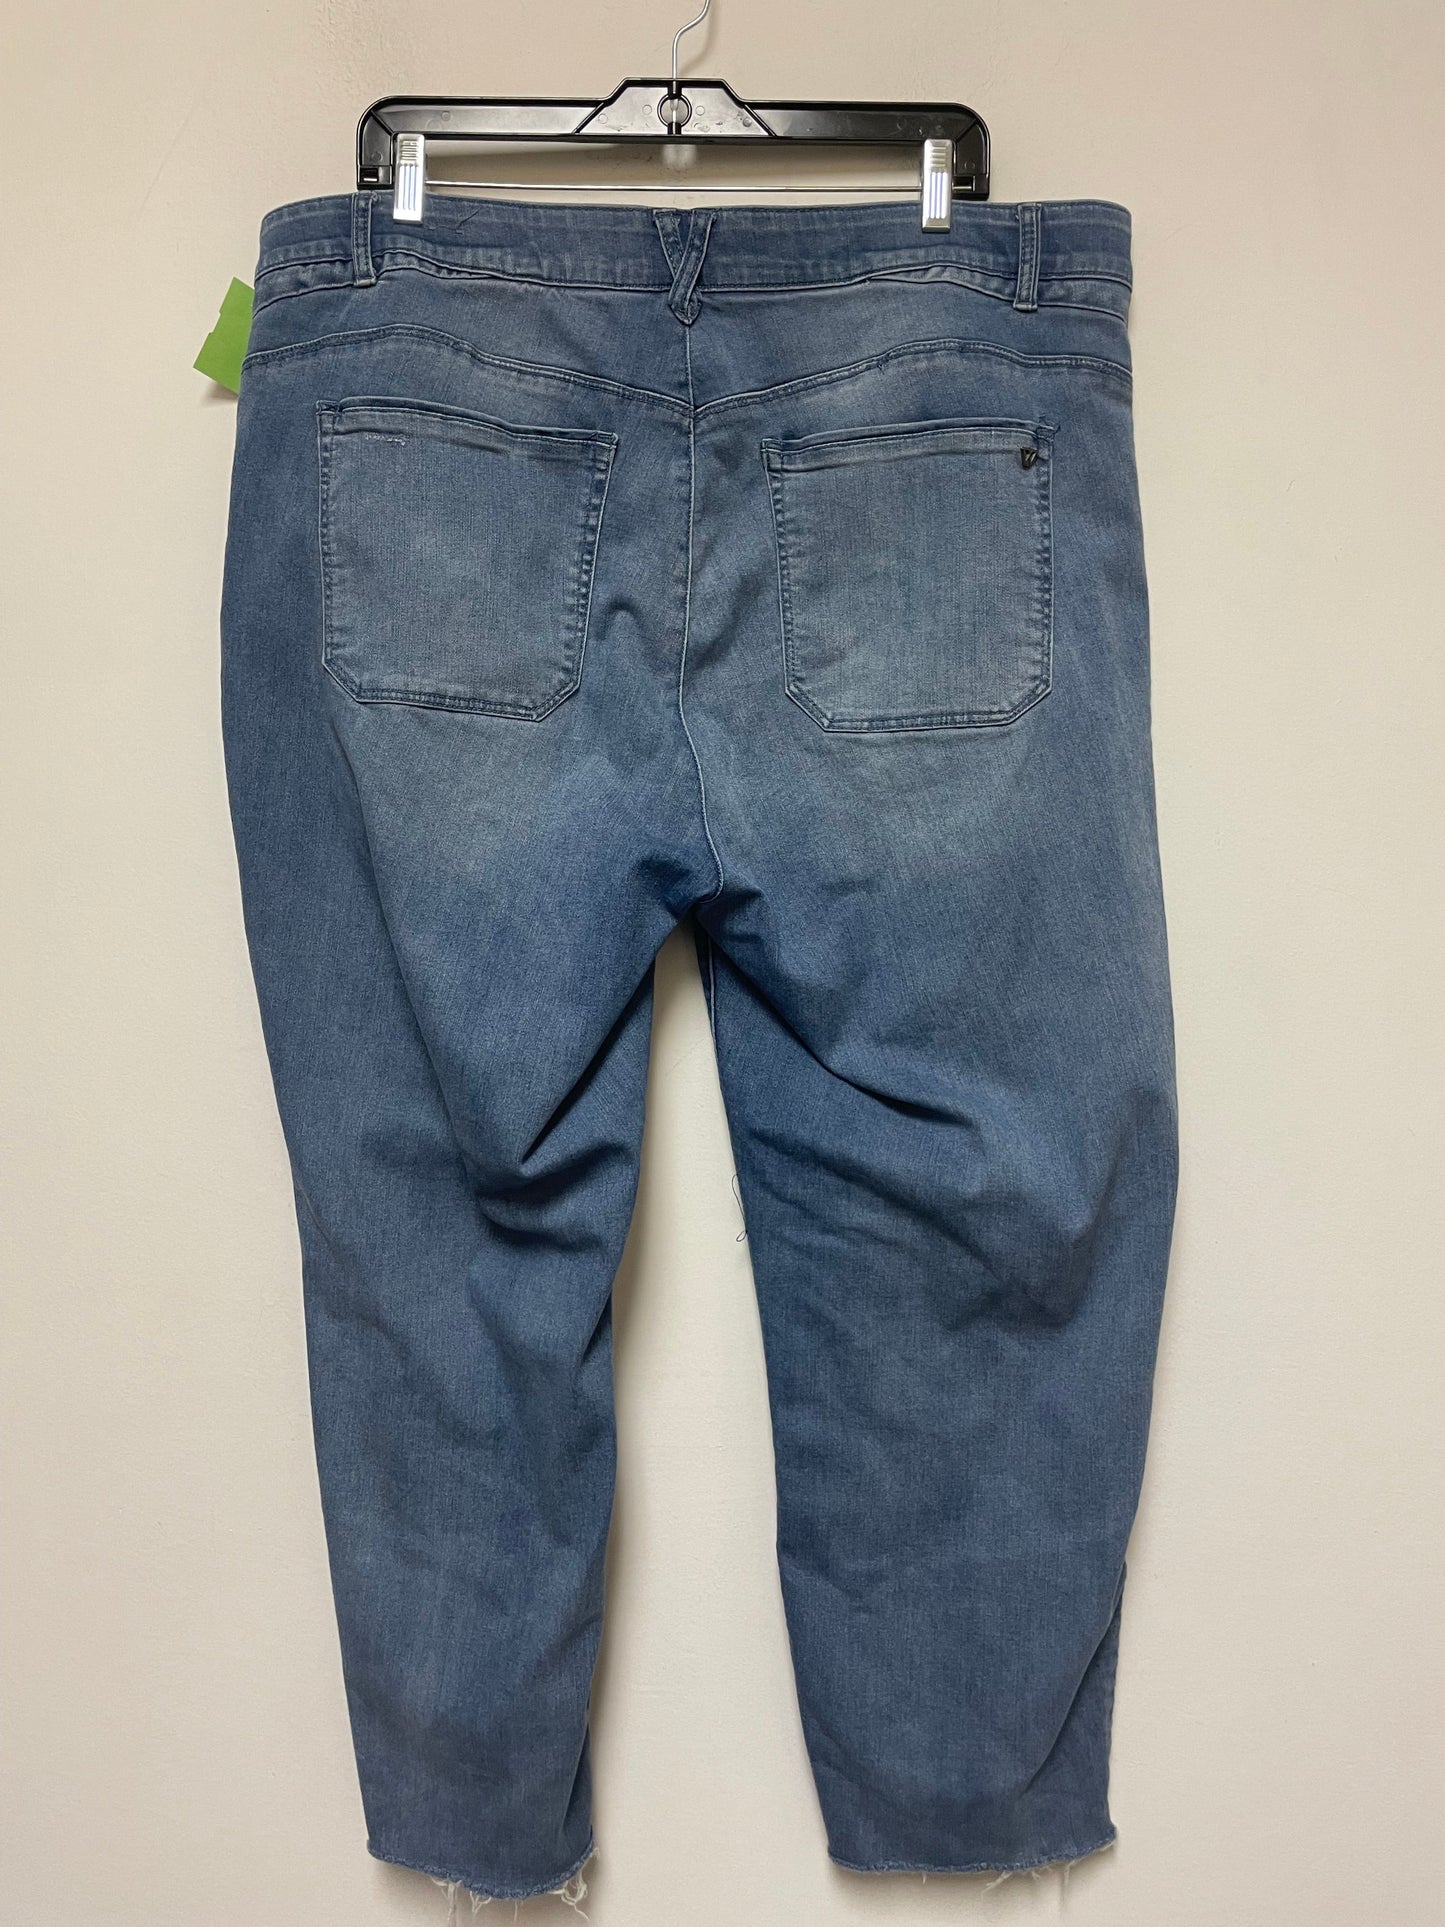 Jeans Straight By Wit & Wisdom  Size: 20